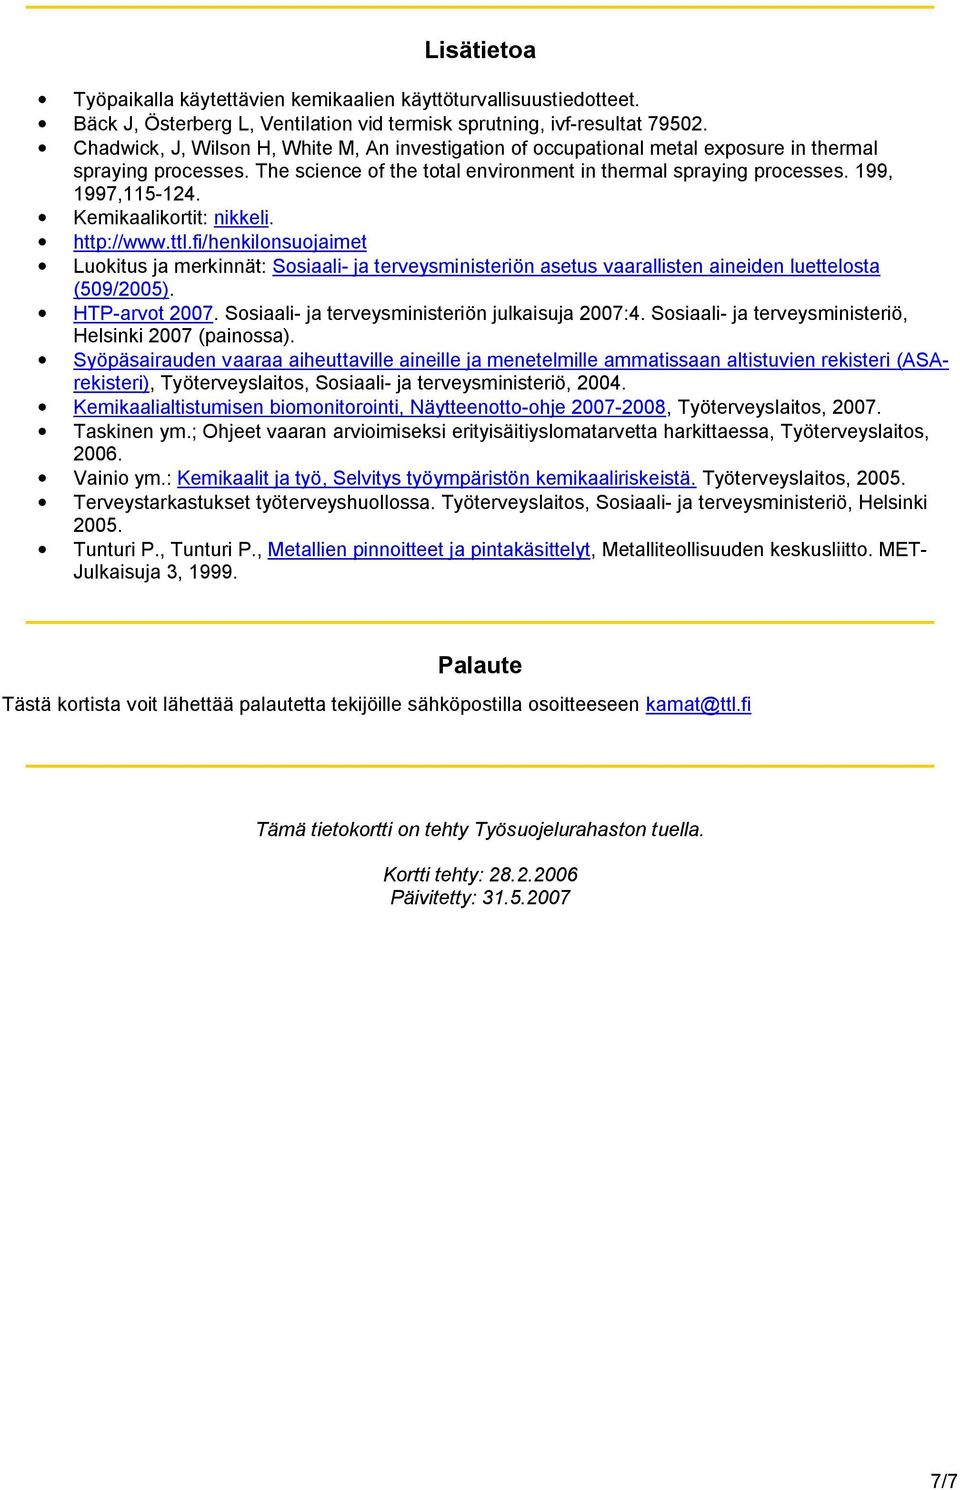 Kemikaalikortit: nikkeli. http://www.ttl.fi/henkilonsuojaimet Luokitus ja merkinnät: Sosiaali- ja terveysministeriön asetus vaarallisten aineiden luettelosta (509/2005). HTP-arvot 2007.